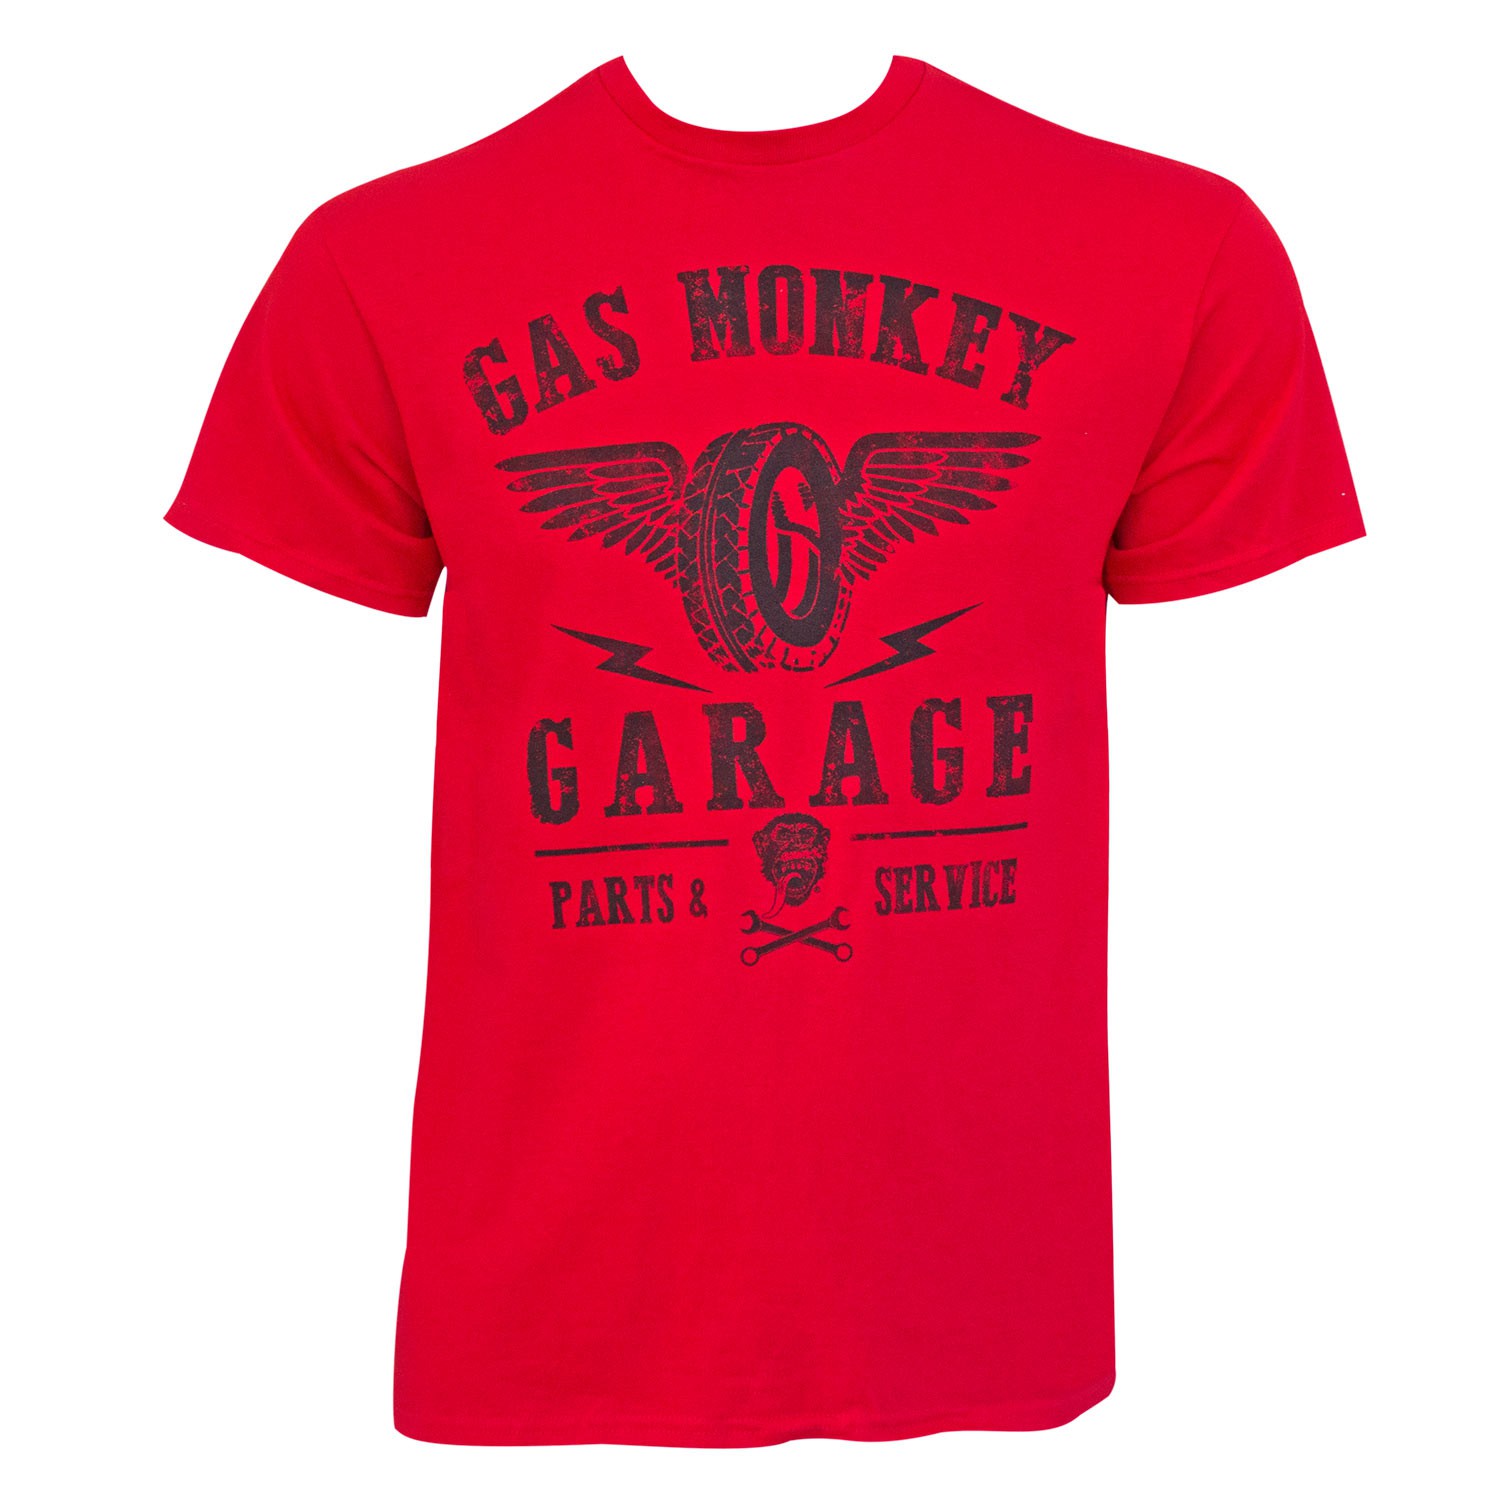 red monkey shirts